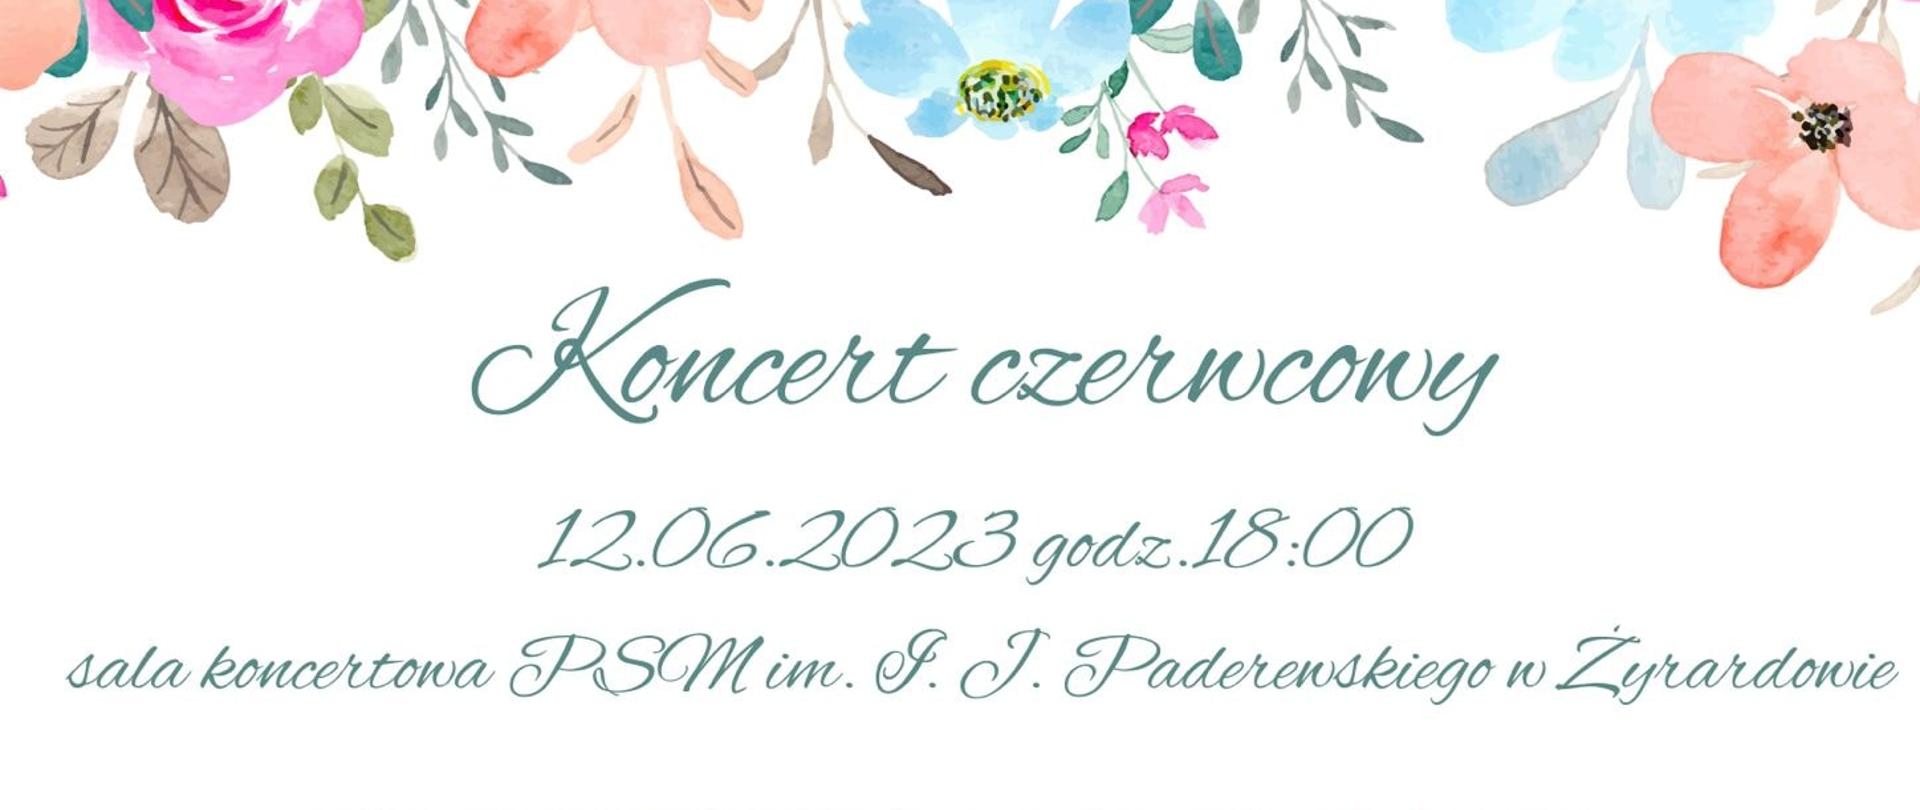 plakat białe tło, na górze i na dole grafiki przedstawiające kolorowe wiosenne kwiaty, napis zielony "Koncert czerwcowy 12.06.2023 godzina 18:00" poniżej wykonawcy